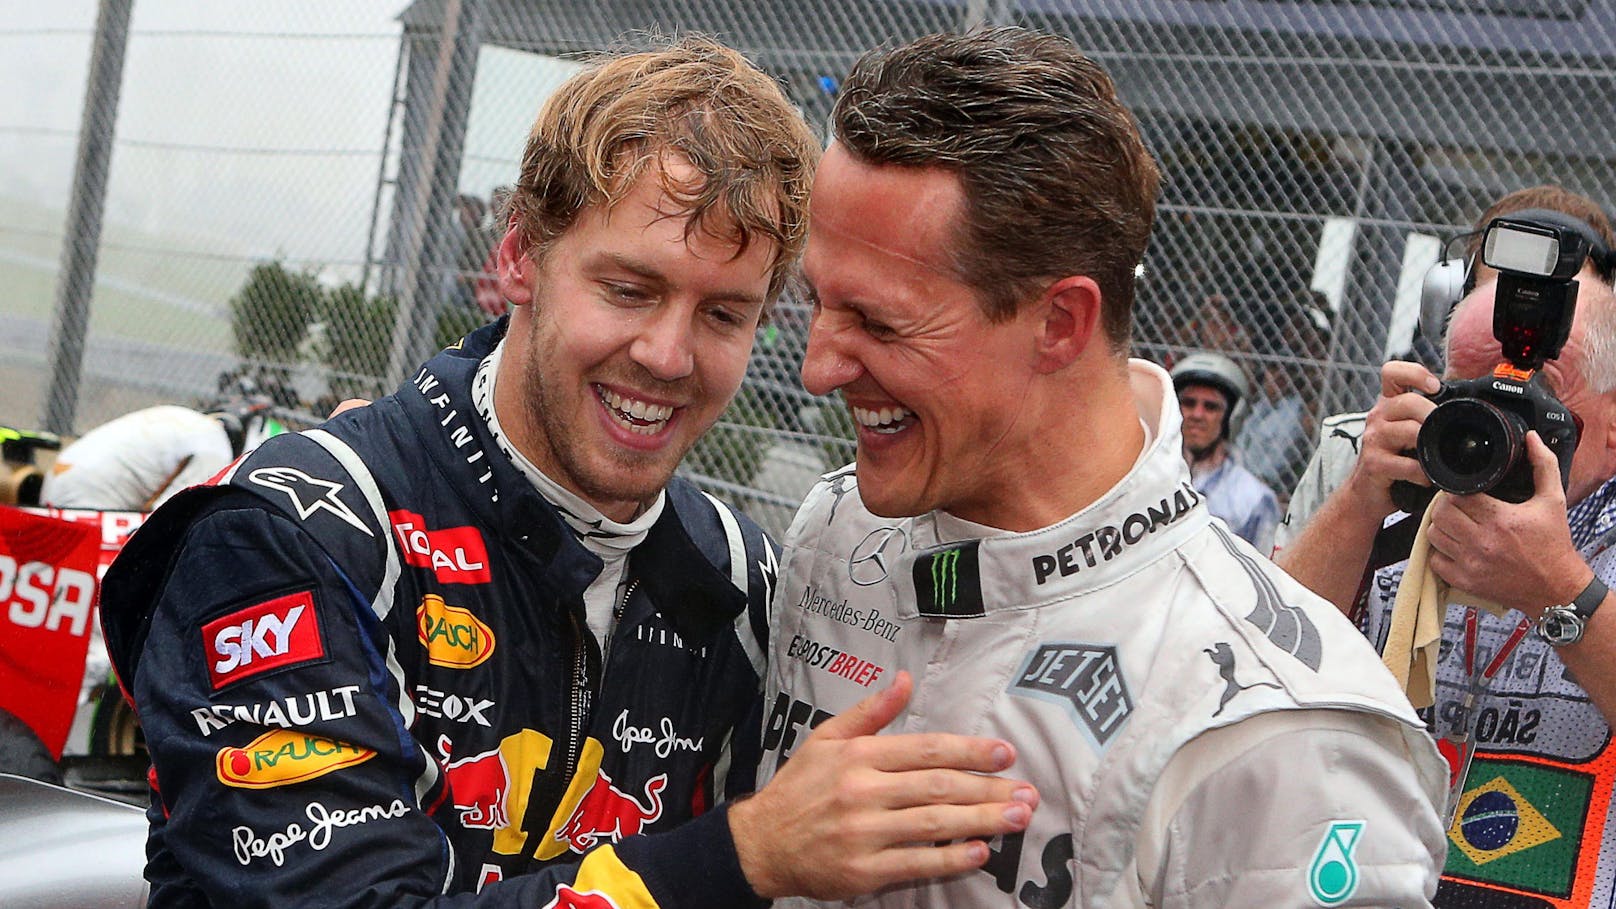 Emotionale Worte! Vettel schickte SMS an Schumacher